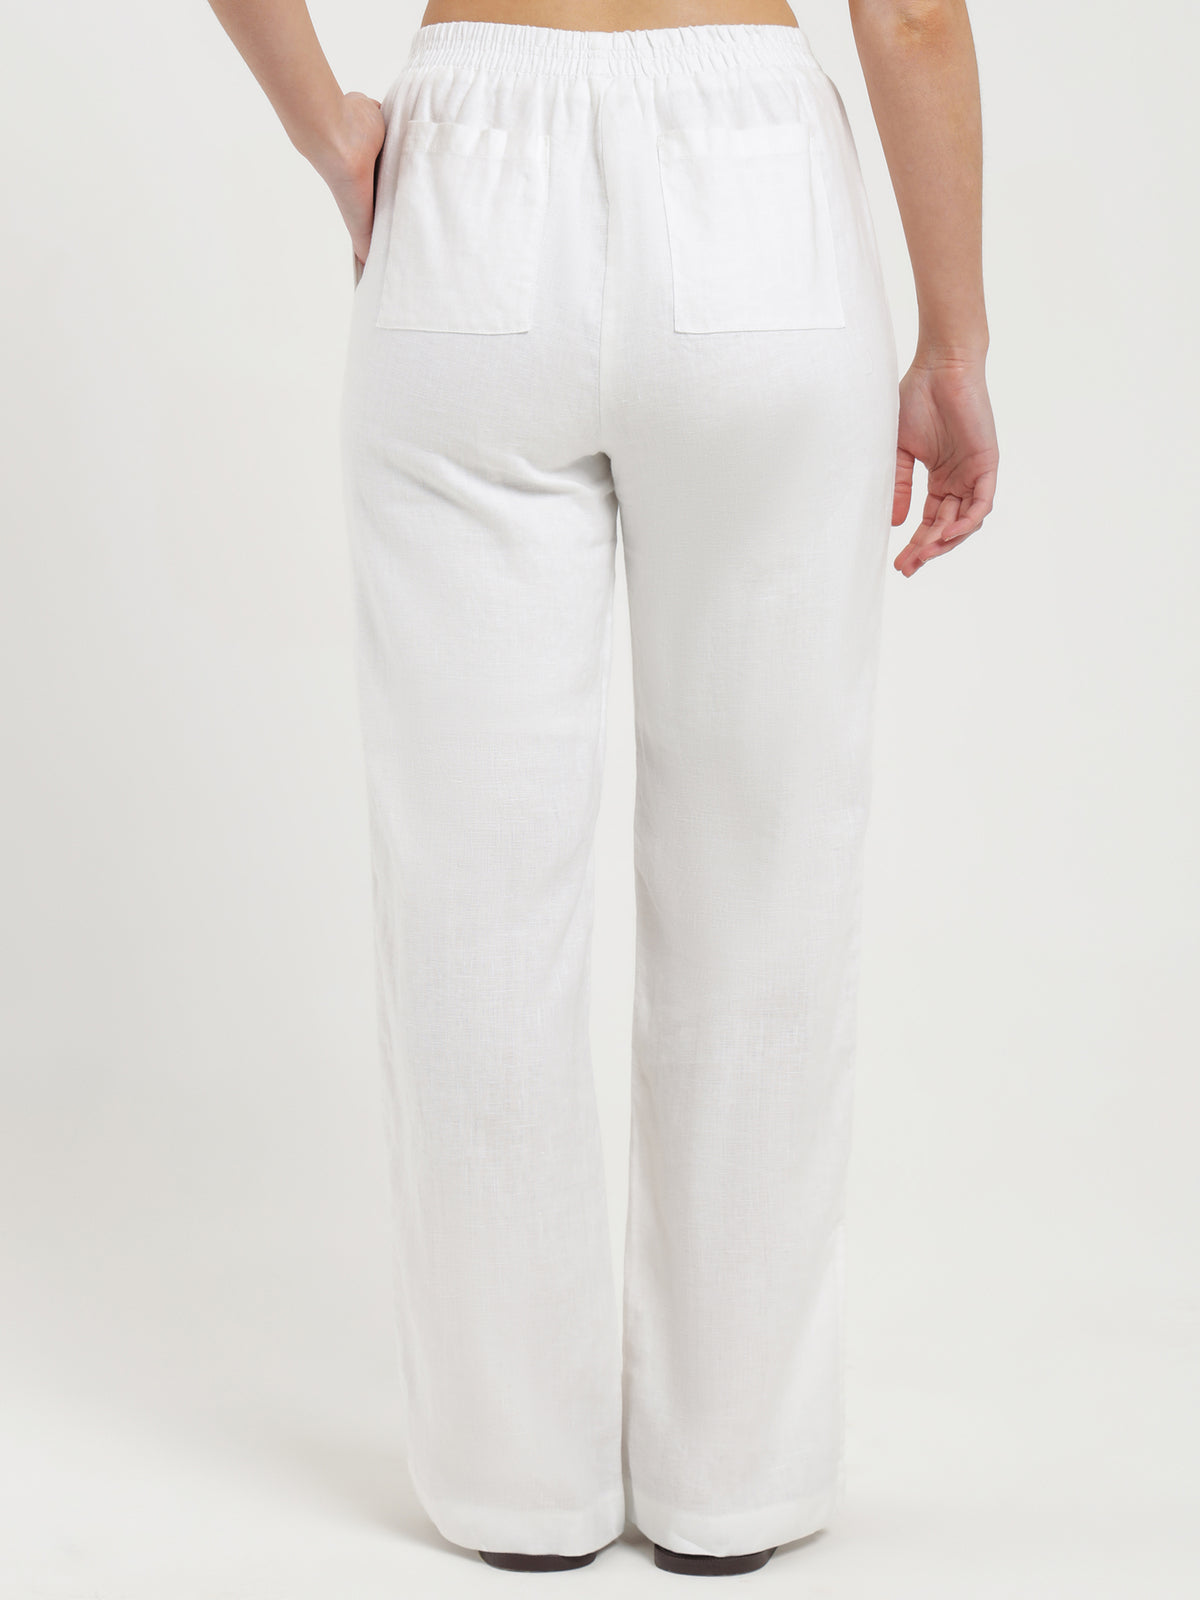 Rynn Linen Split Pants in White